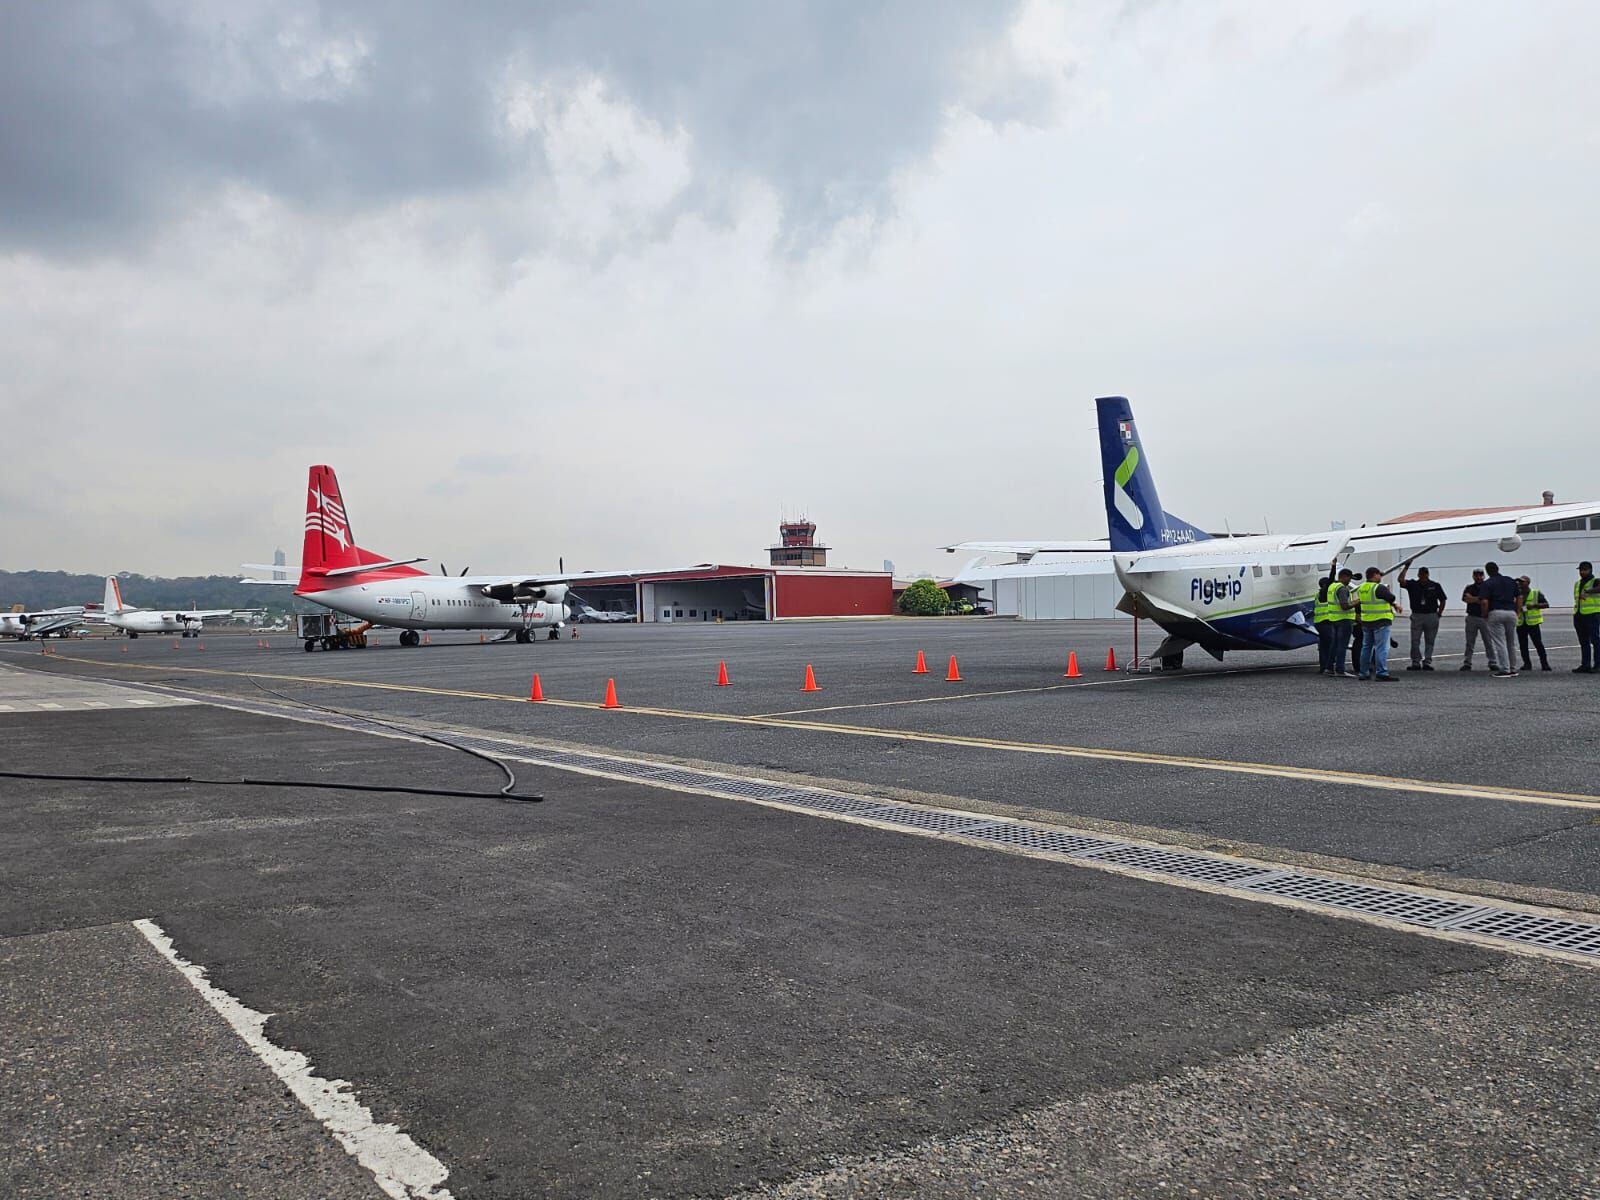 Desde el Aeropuerto Marcos A. Gelabert de Albrook operan las aerolíneas Air Panamá y Flytrip, además de vuelos chárter y privados. Katiuska Hernández